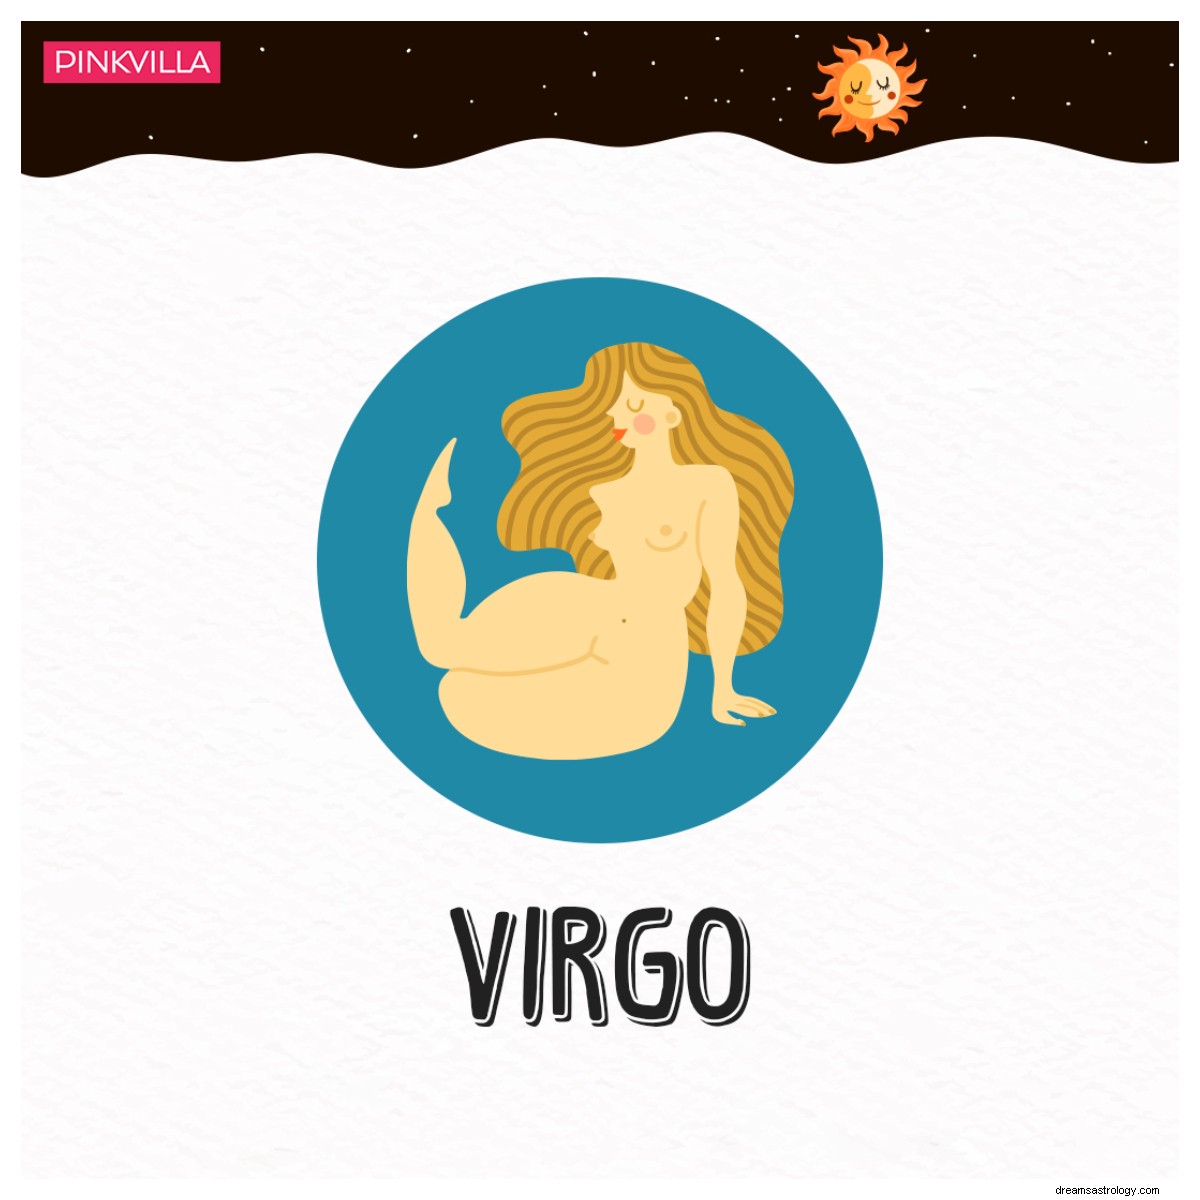 Dai Pesci alla Vergine:segni zodiacali che stanno prosciugando emotivamente il loro partner in una relazione 